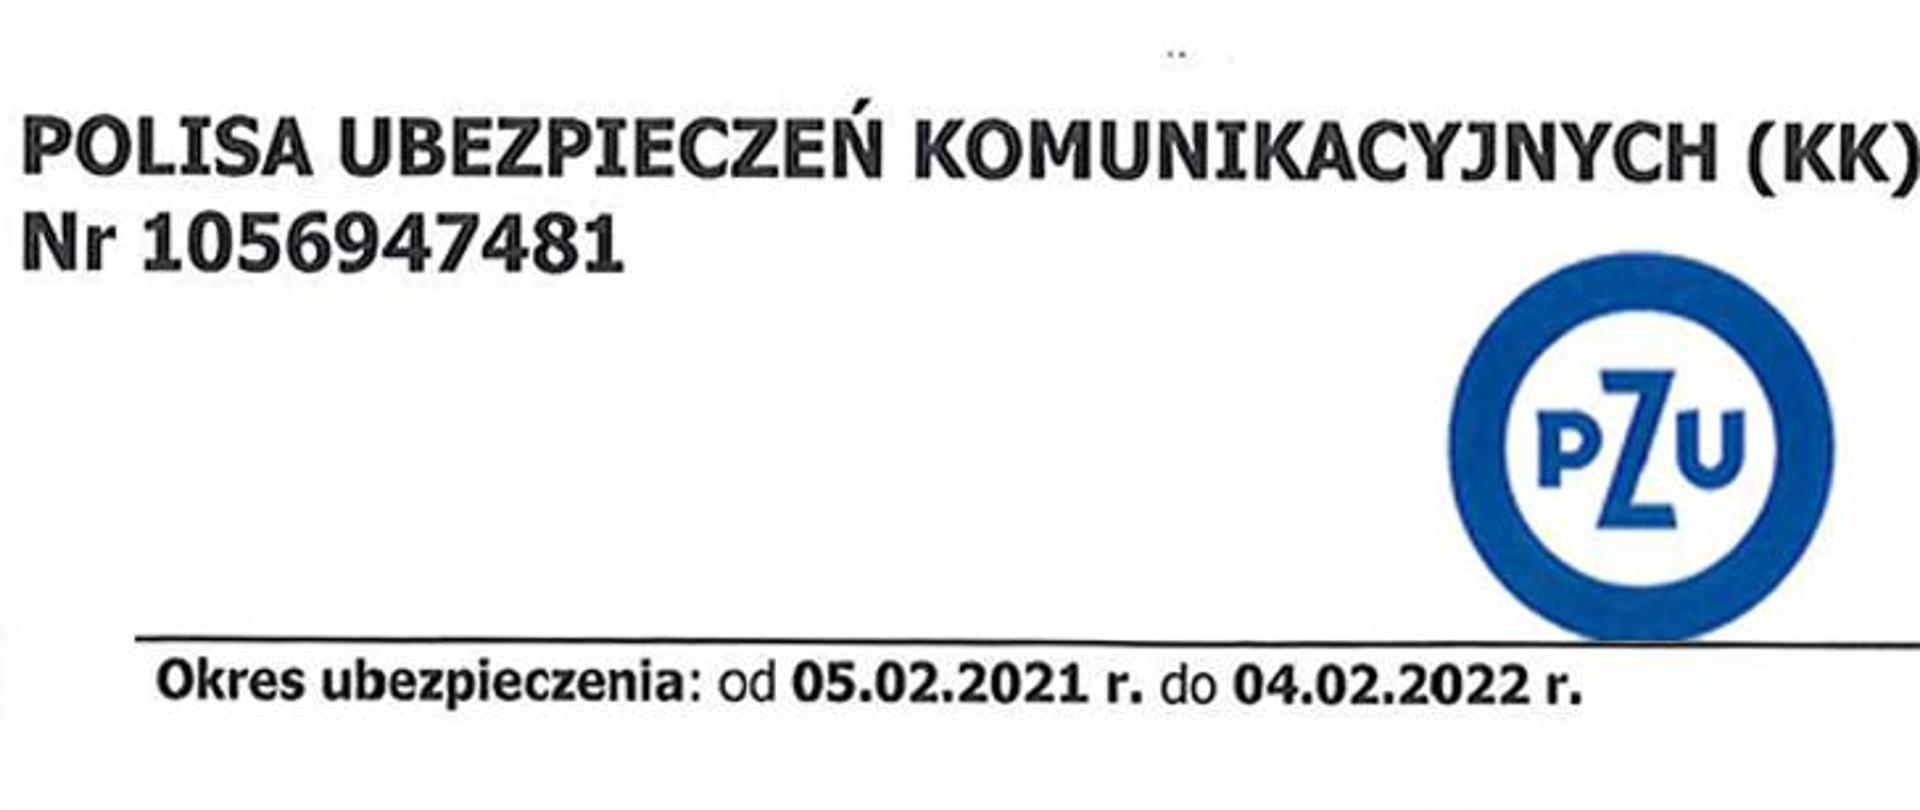 Fragment policy zawierający nazwę i dat ę obowiązywania oraz logo PZU